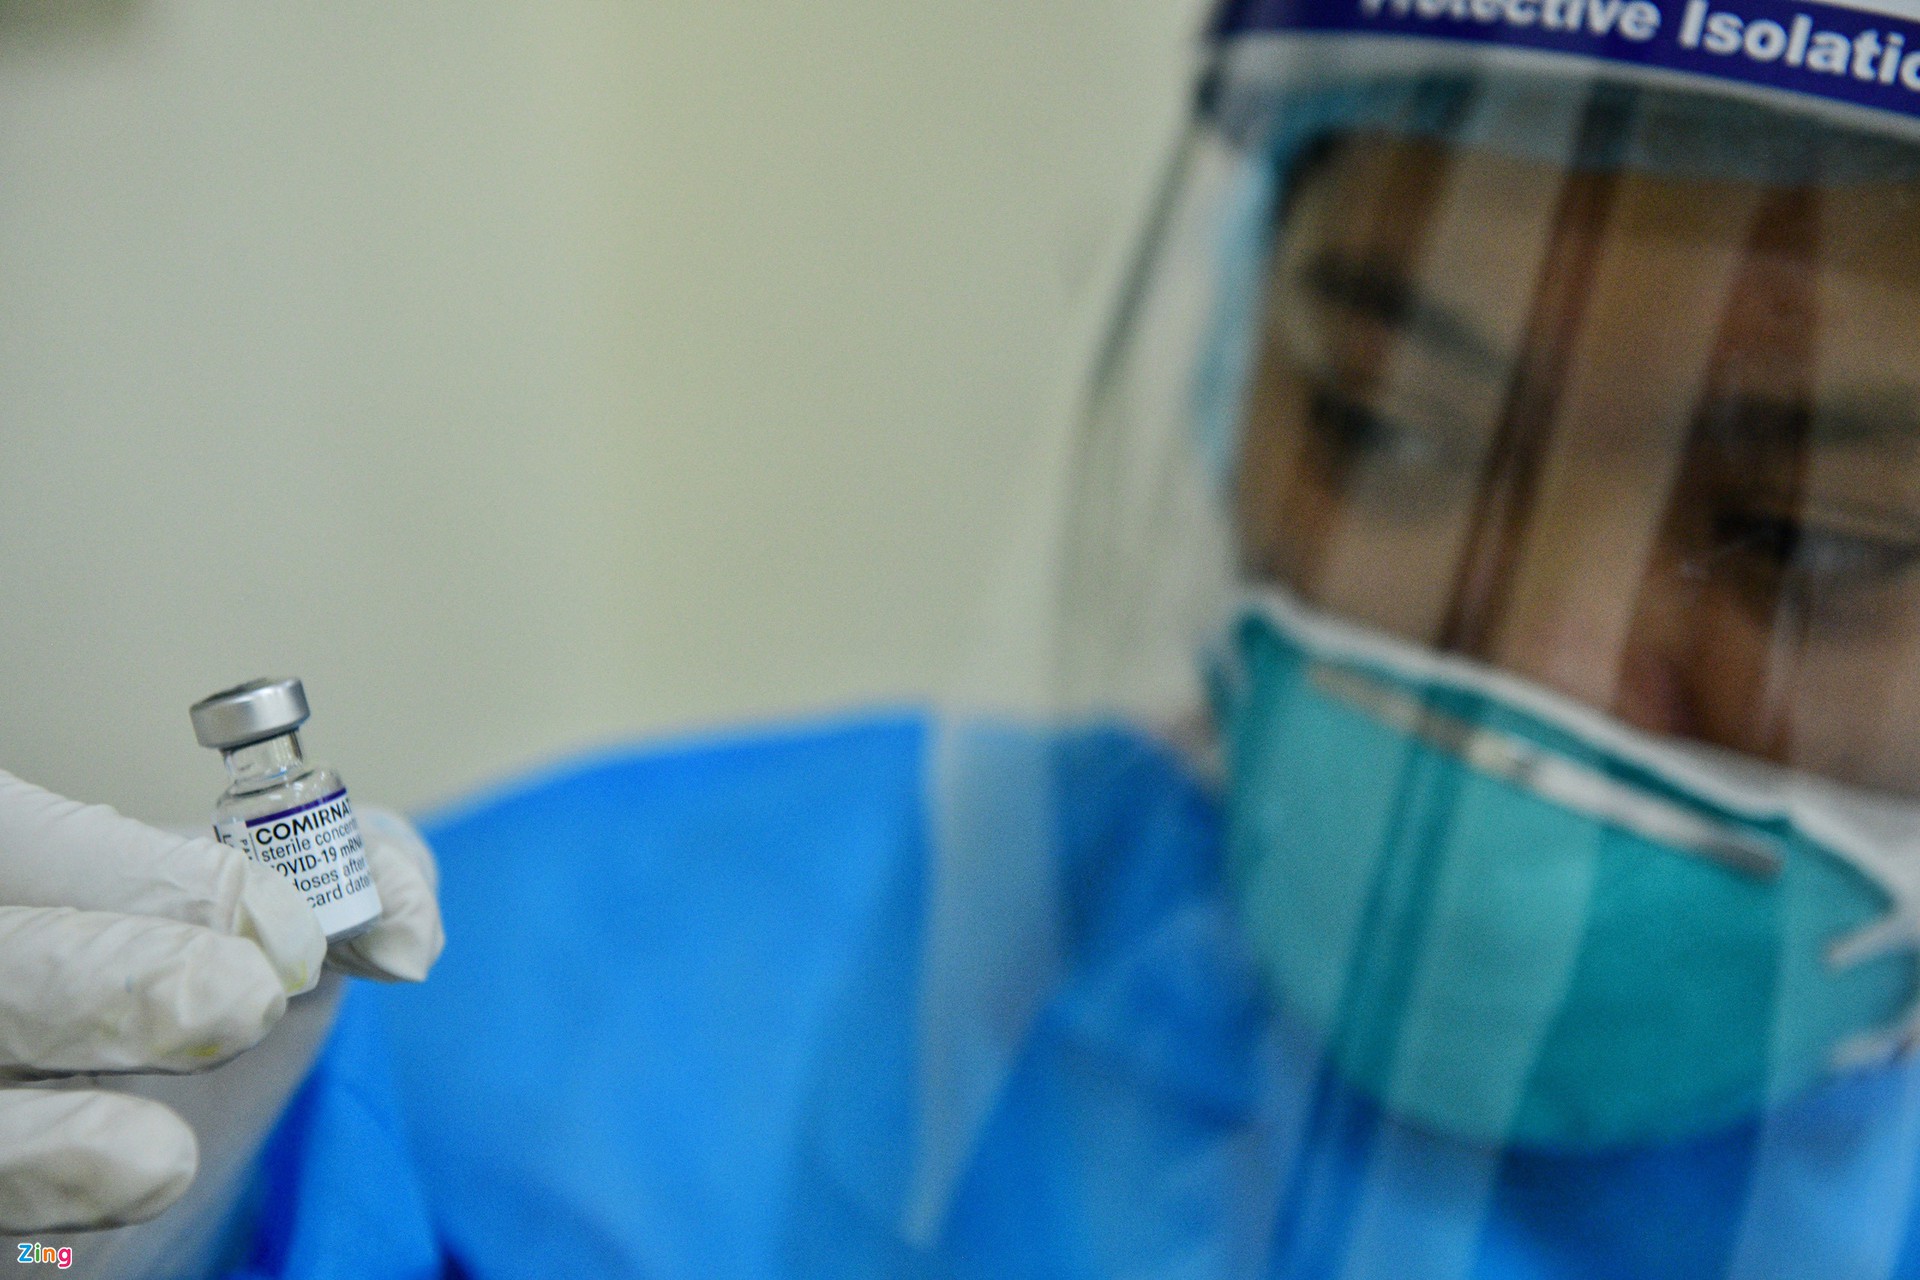 Noi dung hop bao Chinh phNhân viên y tế chuẩn bị tiêm vaccine Pfizer cho trẻ em tại Hà Nội. Ảnh: Thạch Thảo. thuong ky thang 11 anh 3